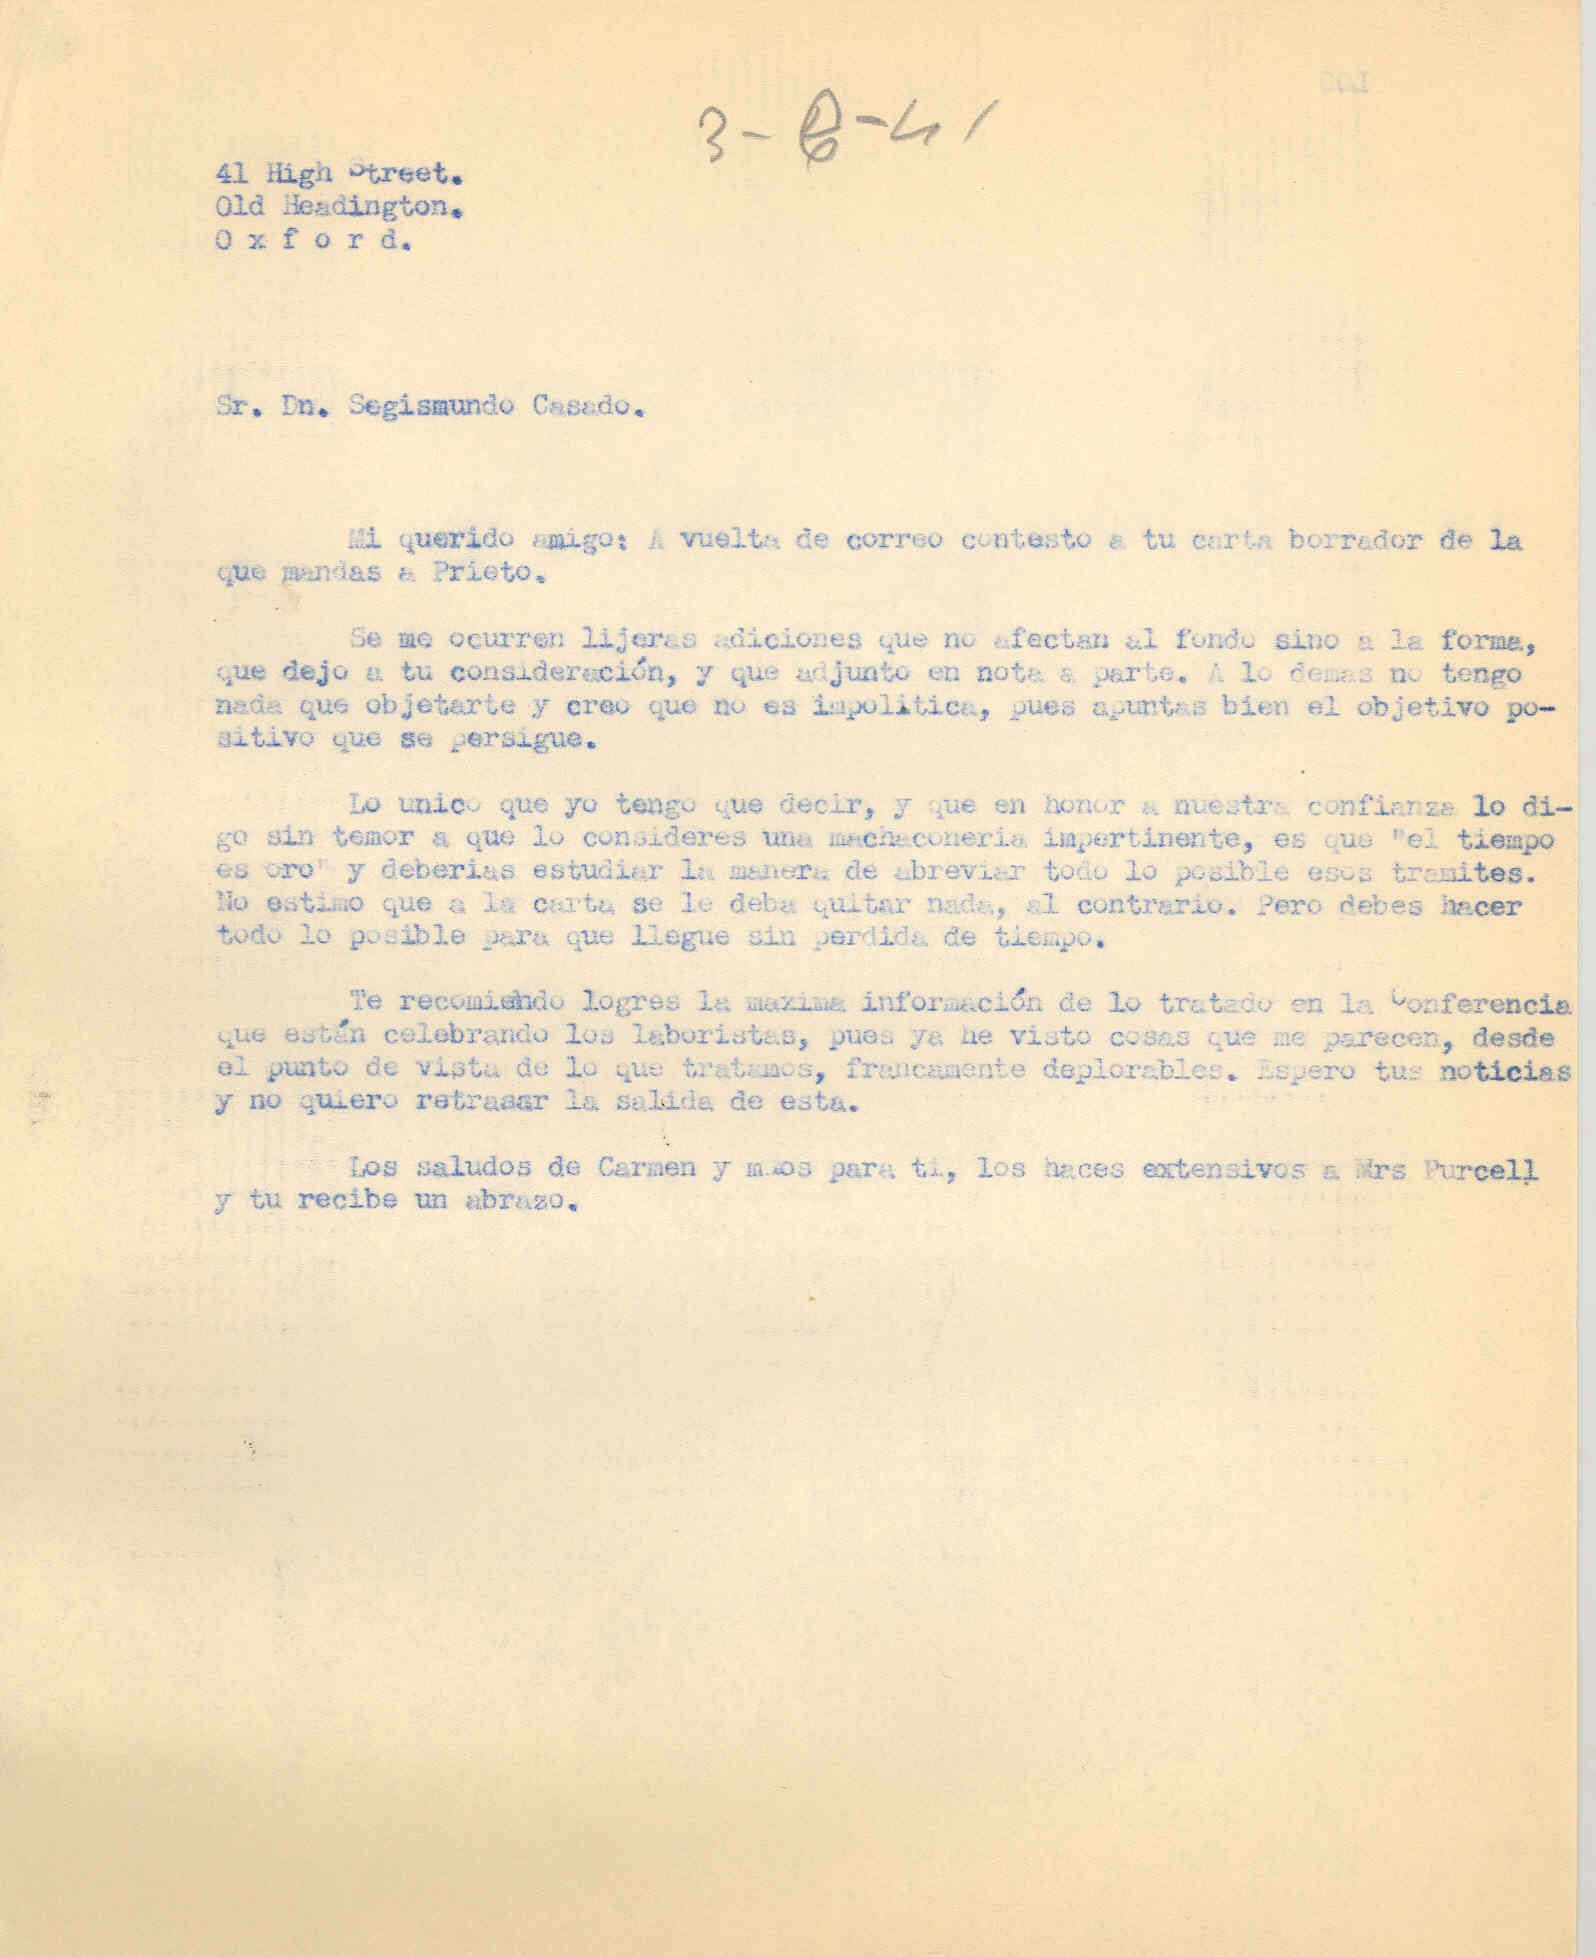 Carta a Segismundo Casado sugieriendo algunas adiciones a una carta que Casado envía a Indalecio Prieto y critíca a los laboristas.